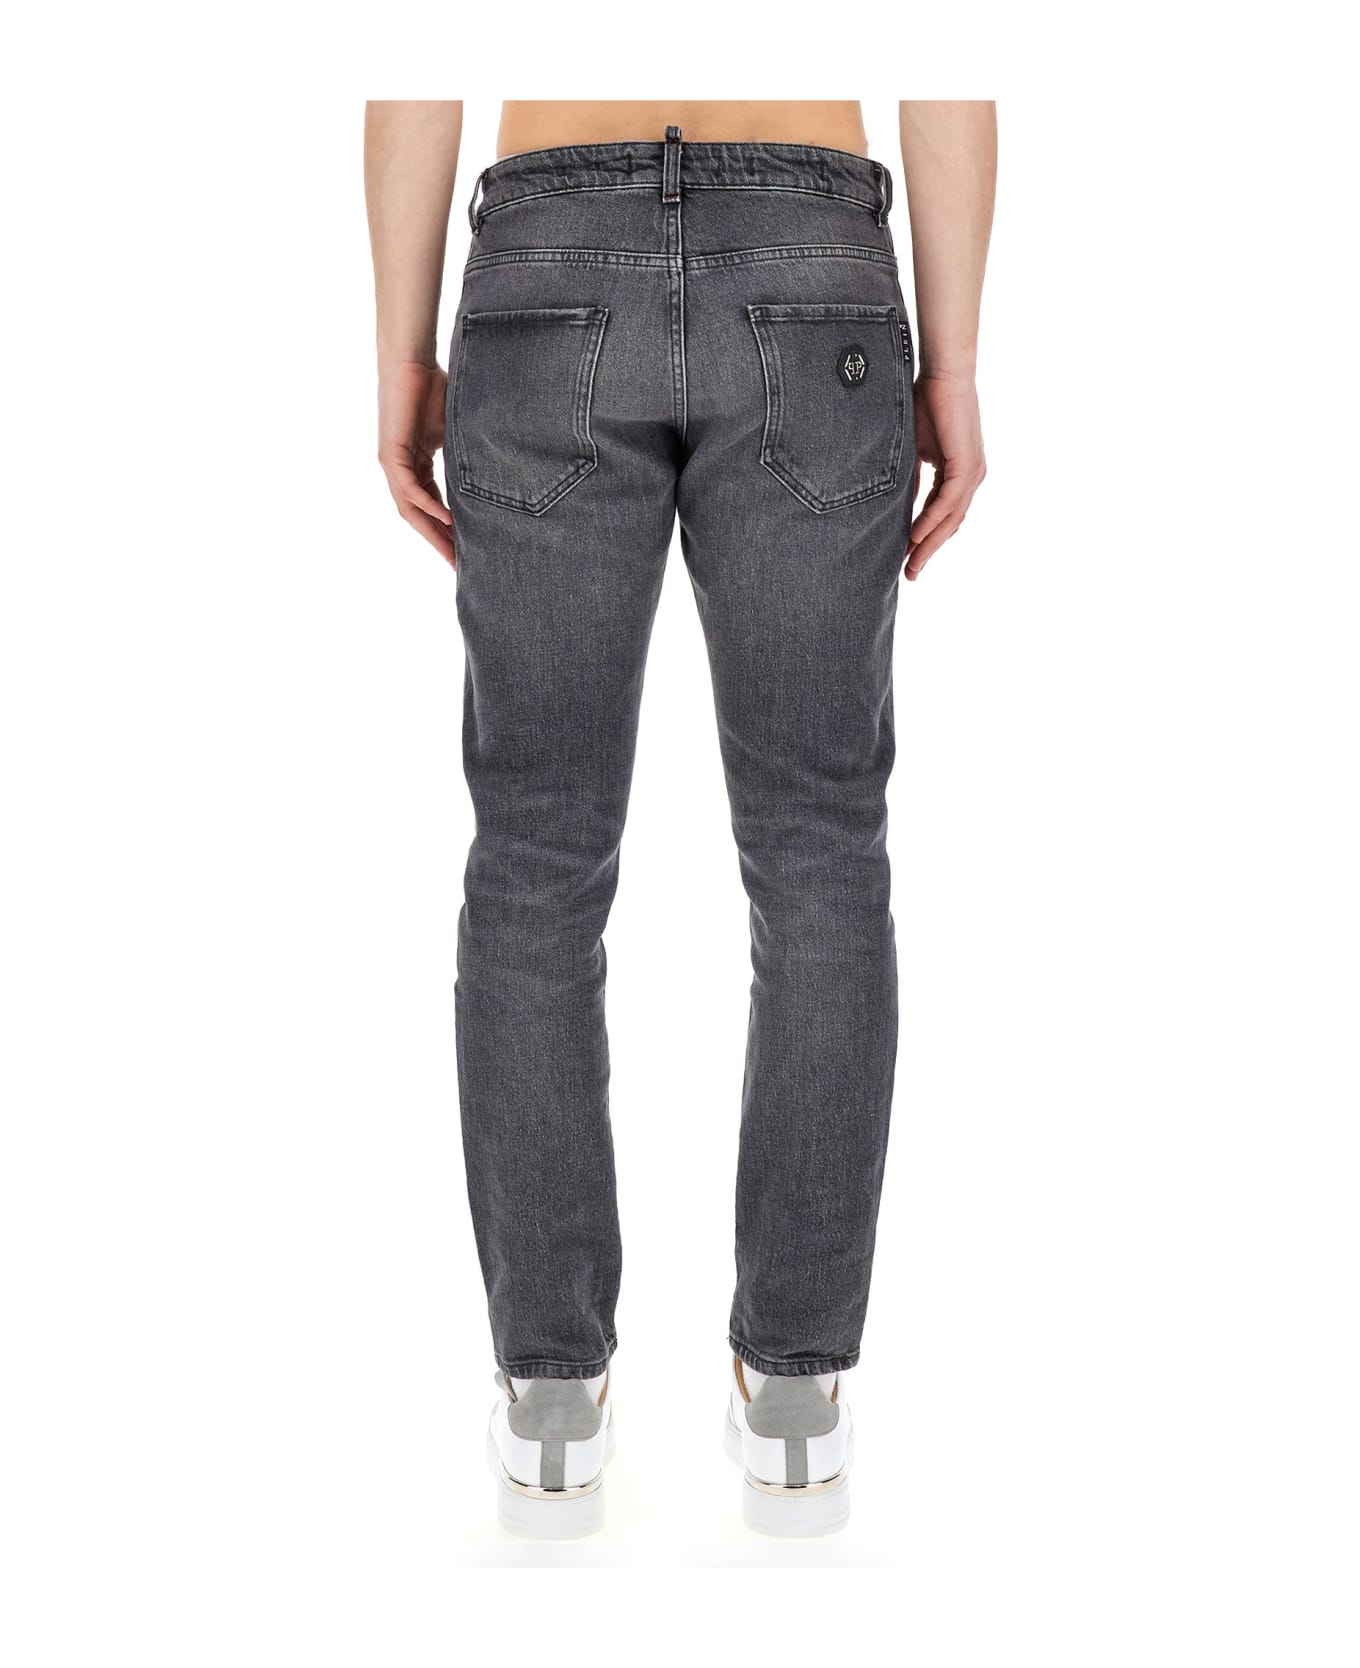 Philipp Plein Skinny Fit Jeans - Grey